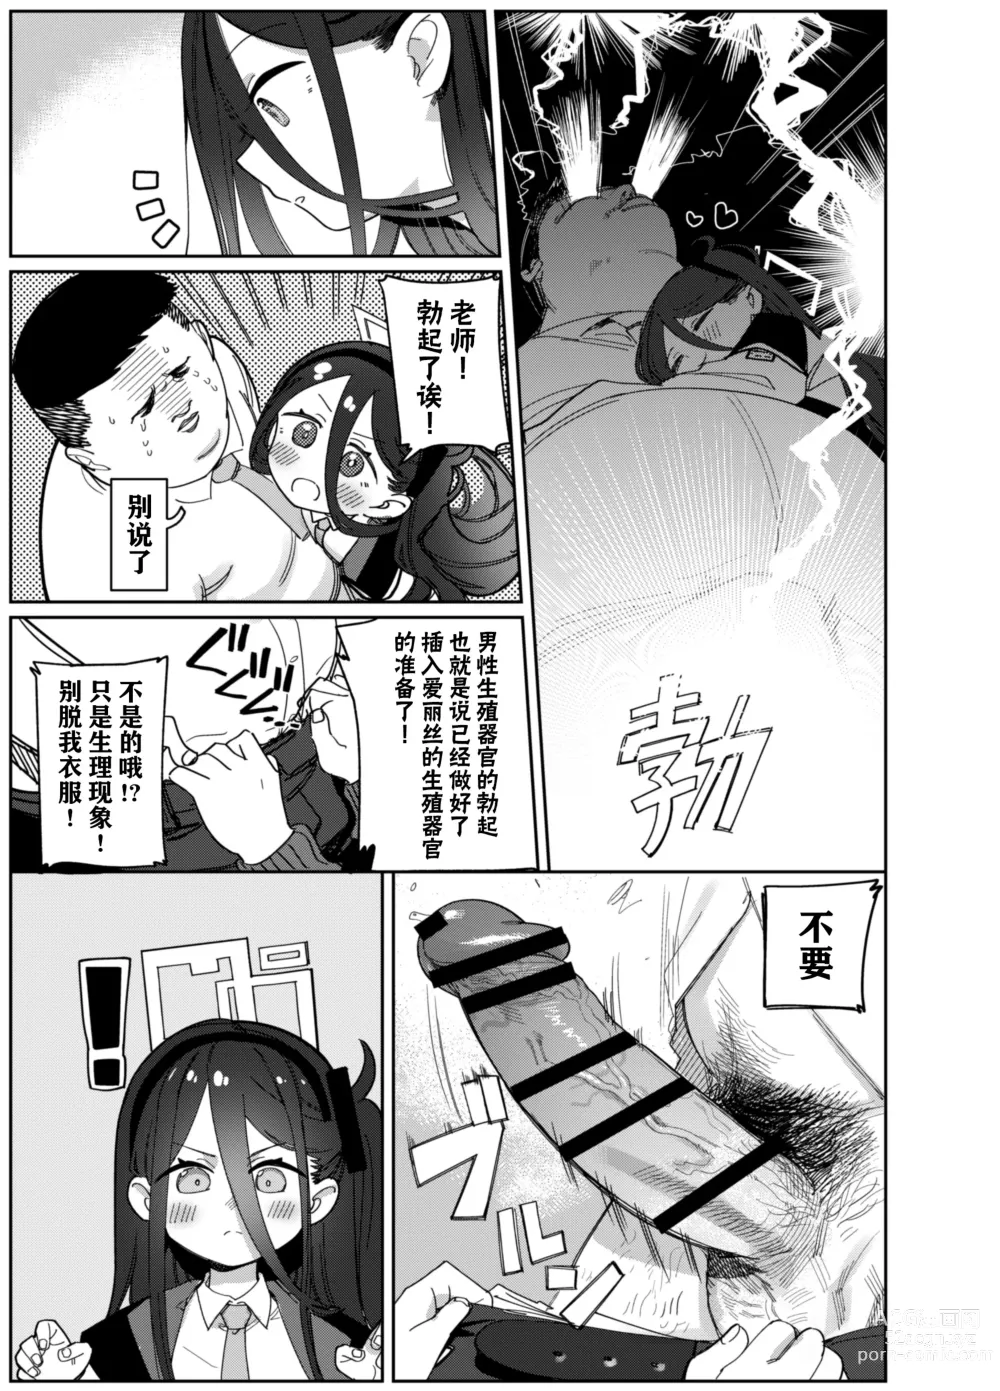 Page 8 of doujinshi 由于老师太弱了 爱丽丝来保护好老师!